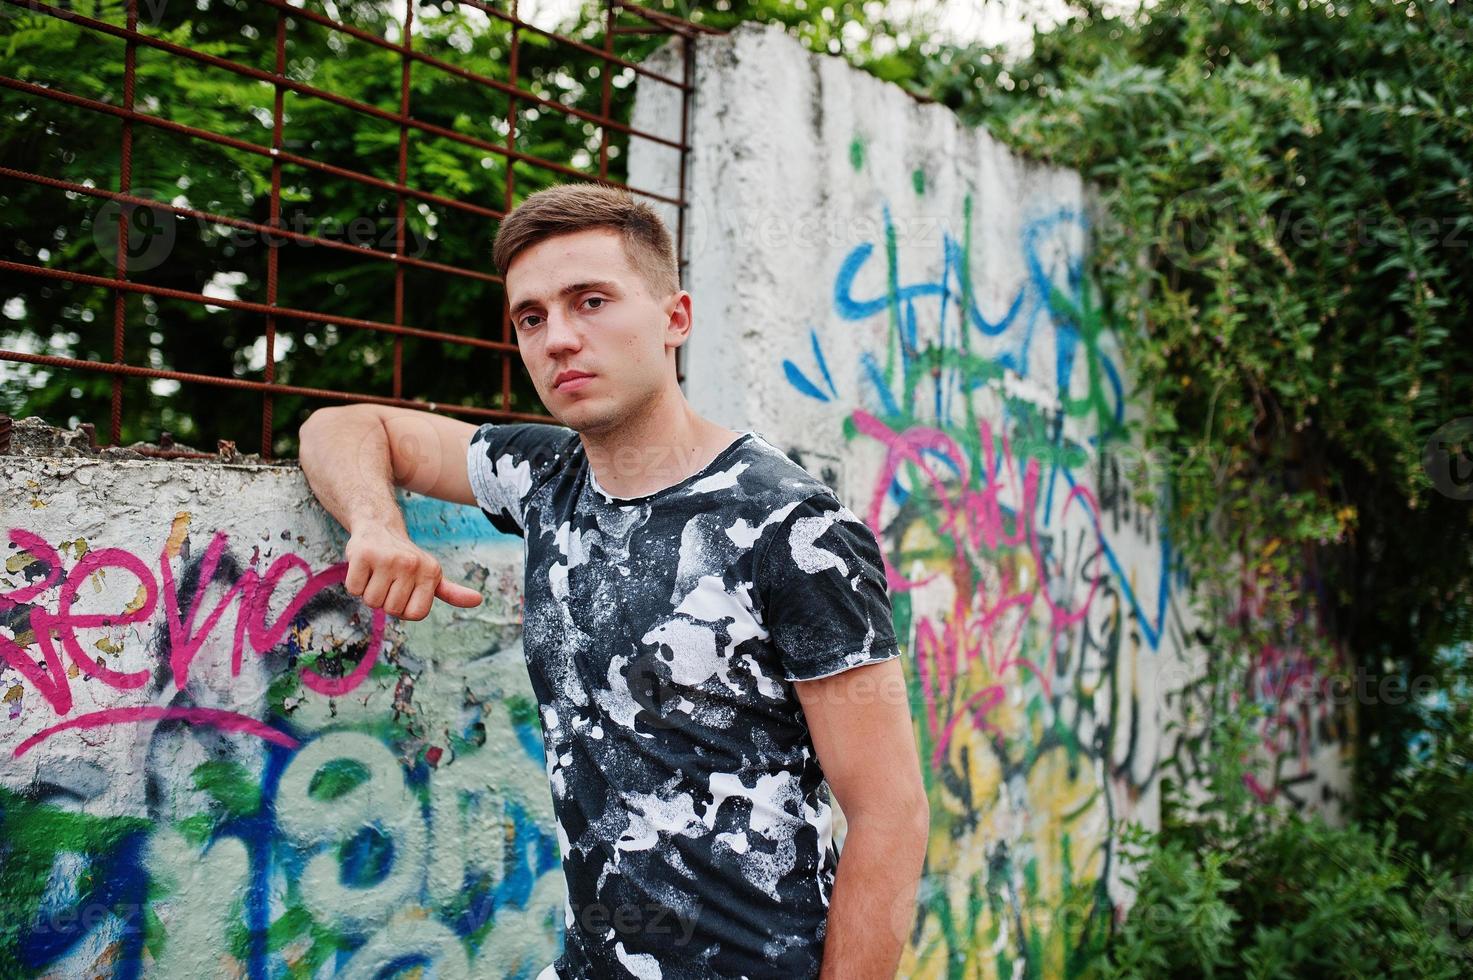 portrait de style de vie d'un bel homme posant dans la rue de la ville avec un mur de graffitis. photo